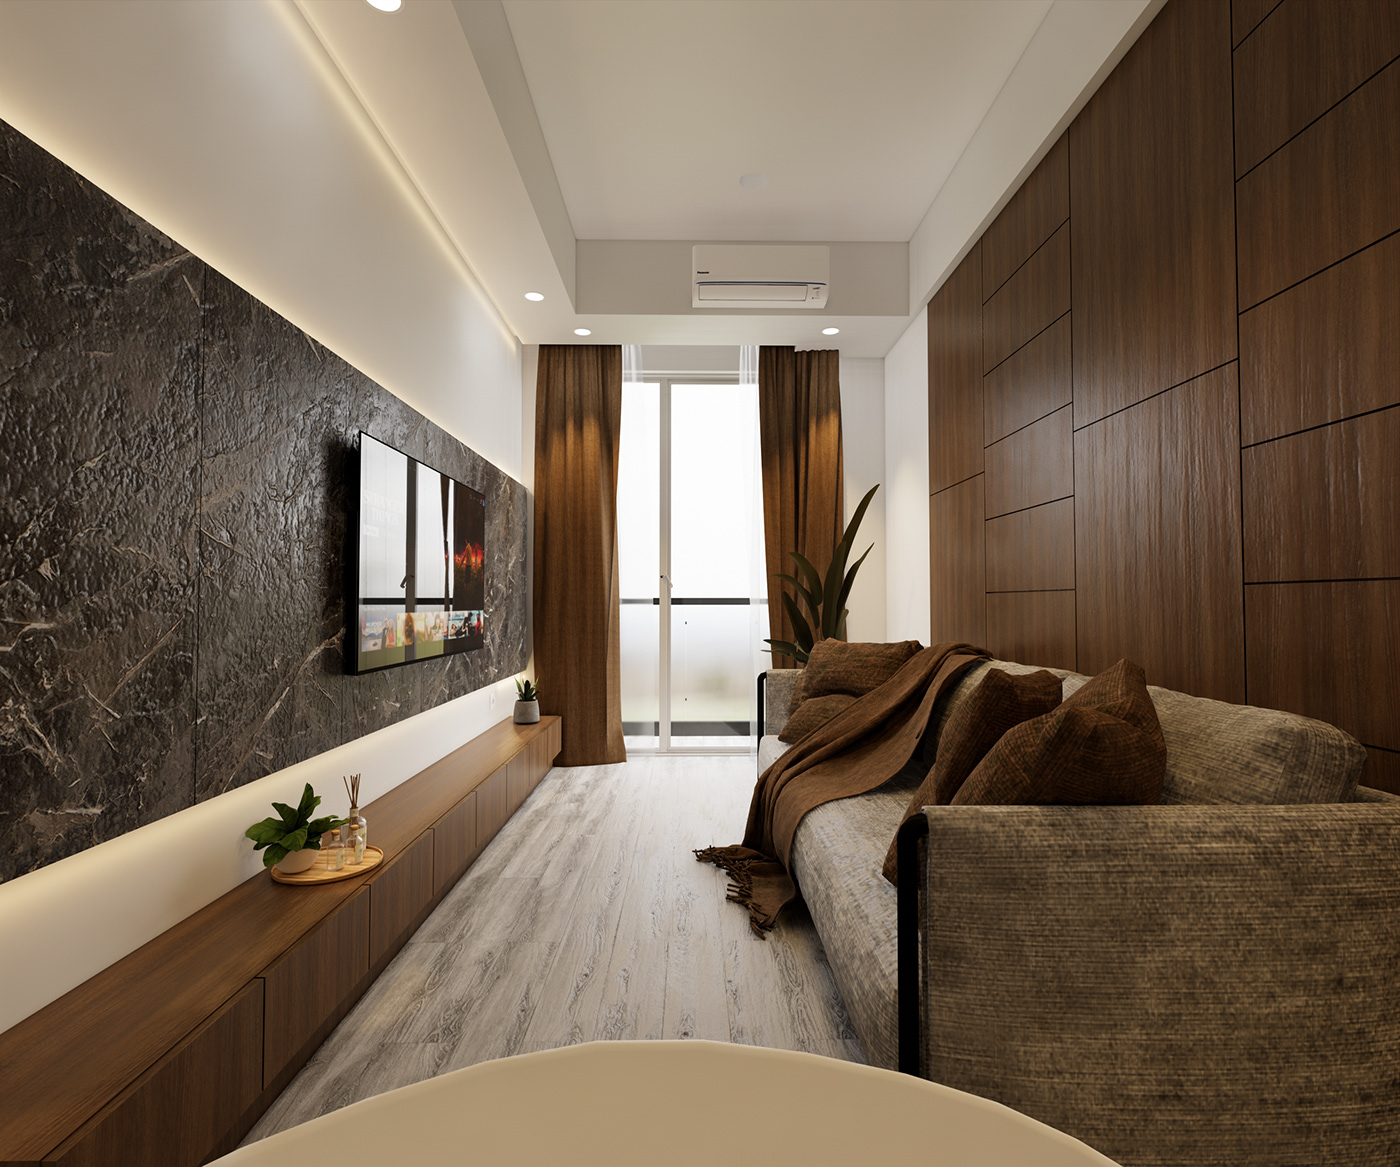 luxury apartments luxury interior modern interior design  visualization Interior interiordesign bedroom design livingroominterior kitchen design